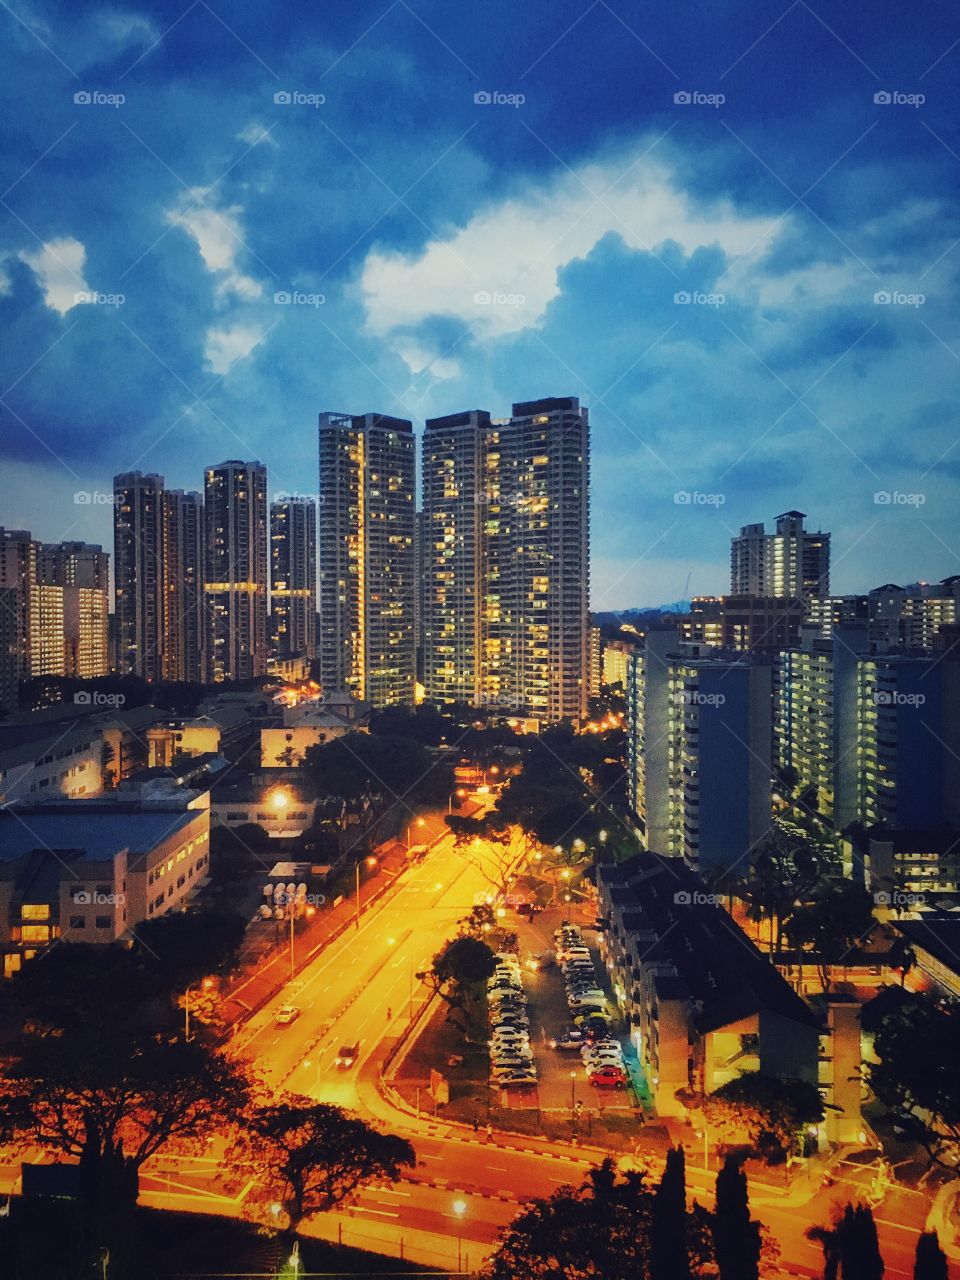 Singapore public housing
